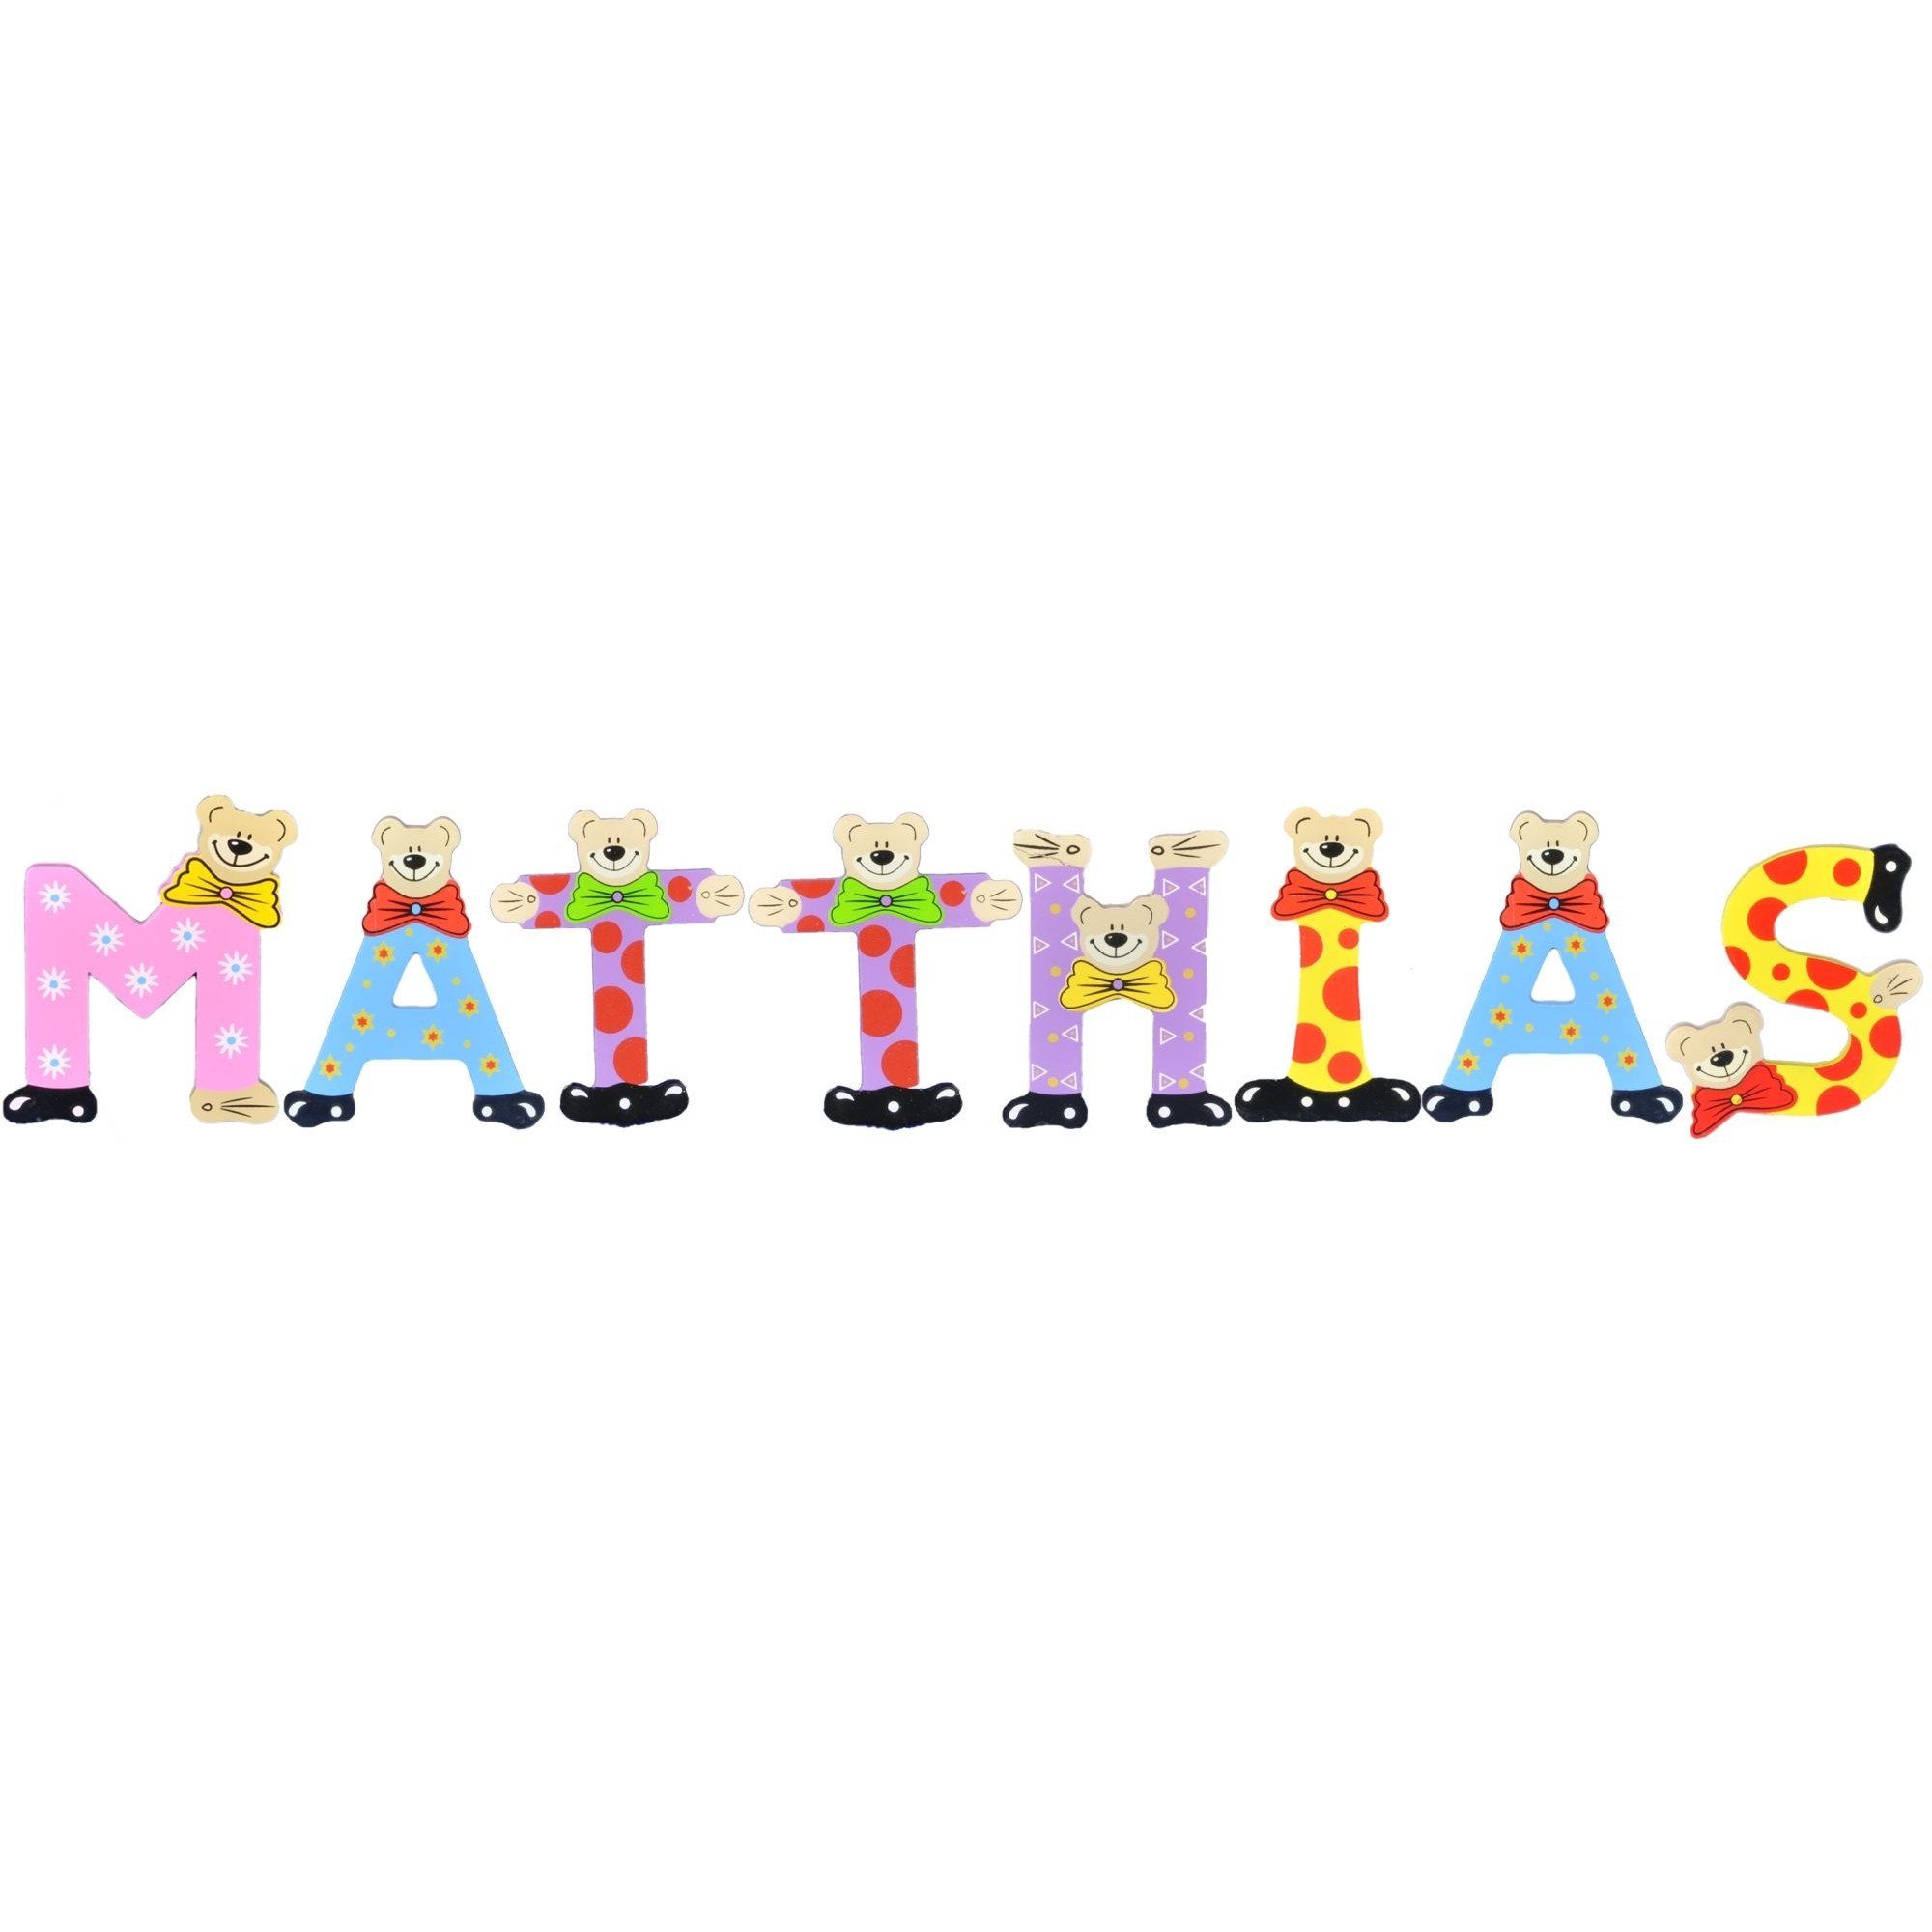 Holz-Buchstaben MATTHIAS Playshoes St), Kinder Namen-Set, - sortiert (Set, 8 Deko-Buchstaben